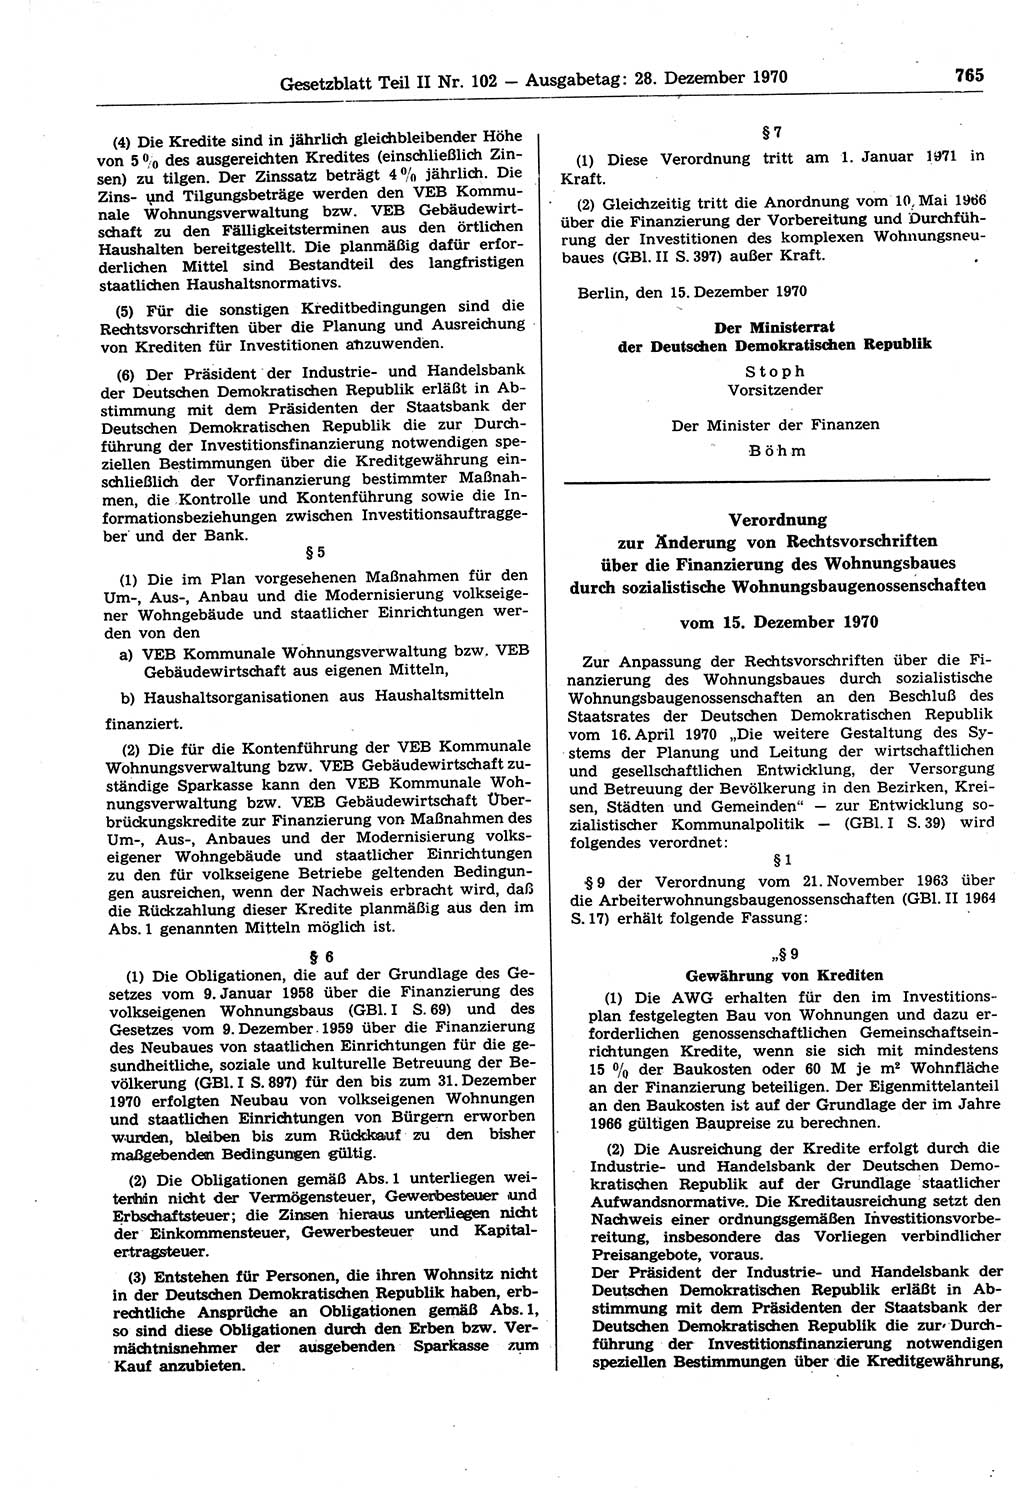 Gesetzblatt (GBl.) der Deutschen Demokratischen Republik (DDR) Teil ⅠⅠ 1970, Seite 765 (GBl. DDR ⅠⅠ 1970, S. 765)